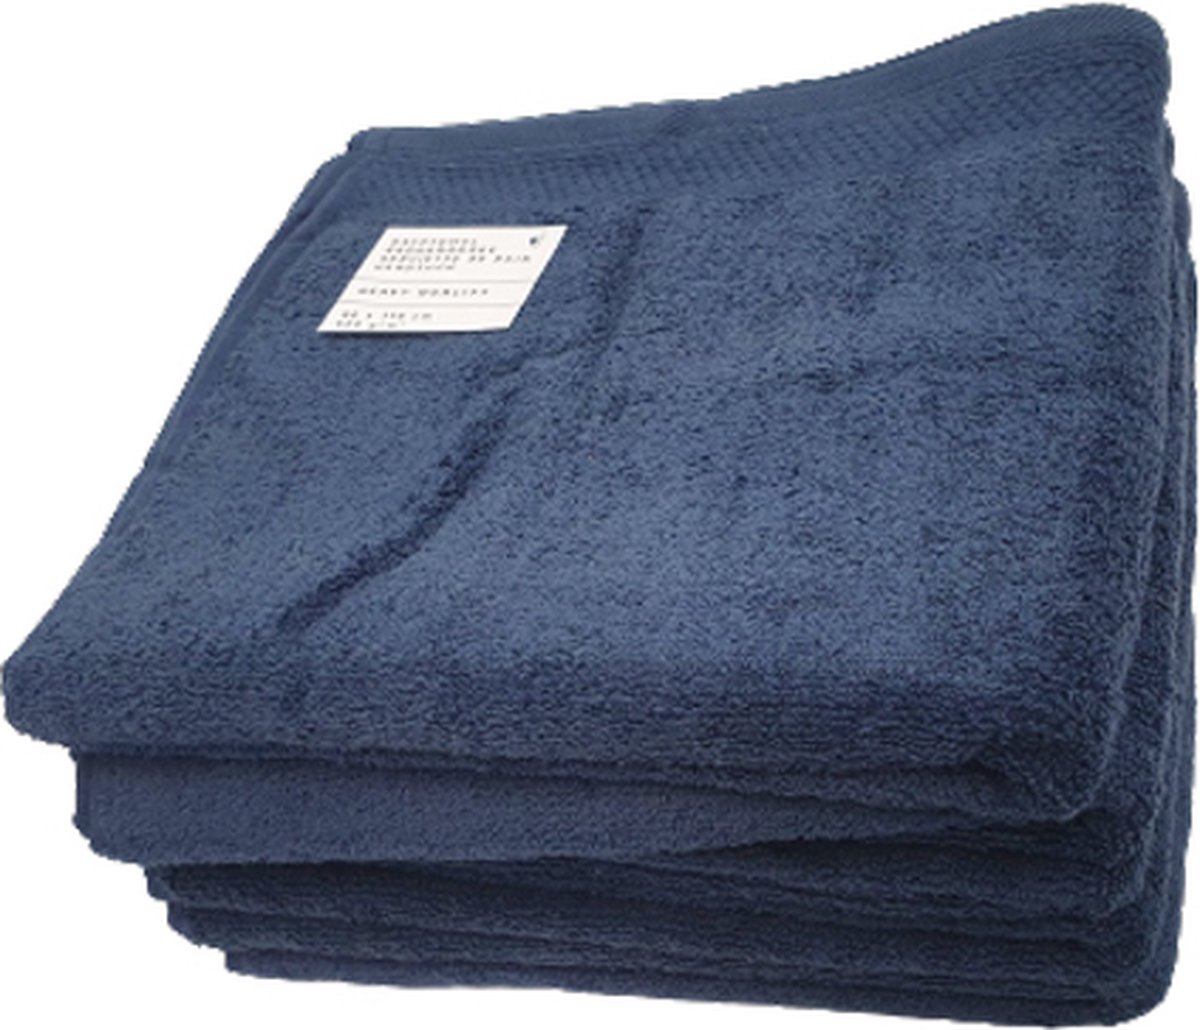 5x Handdoek Blauw | 60 x 110 cm | Hotelkwaliteit 550 gr m2